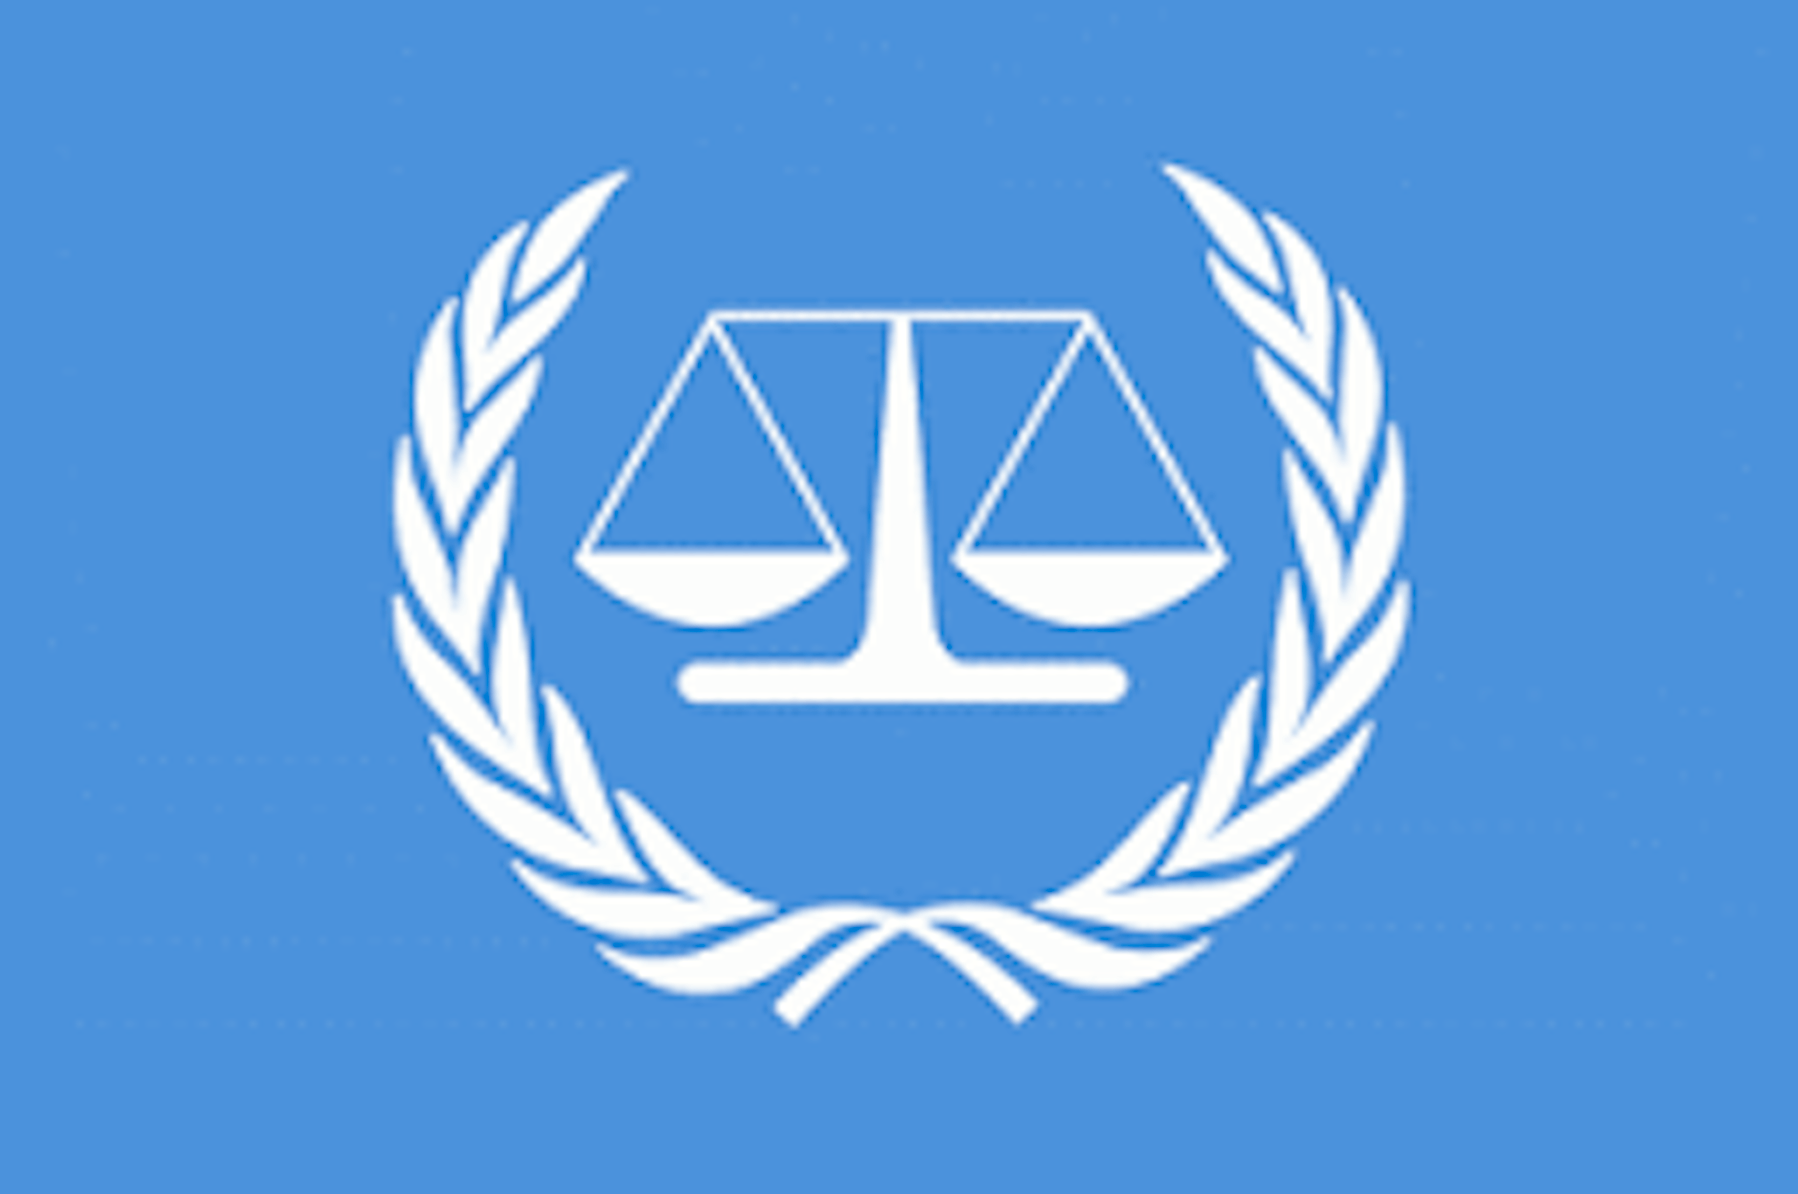 3 международных суда